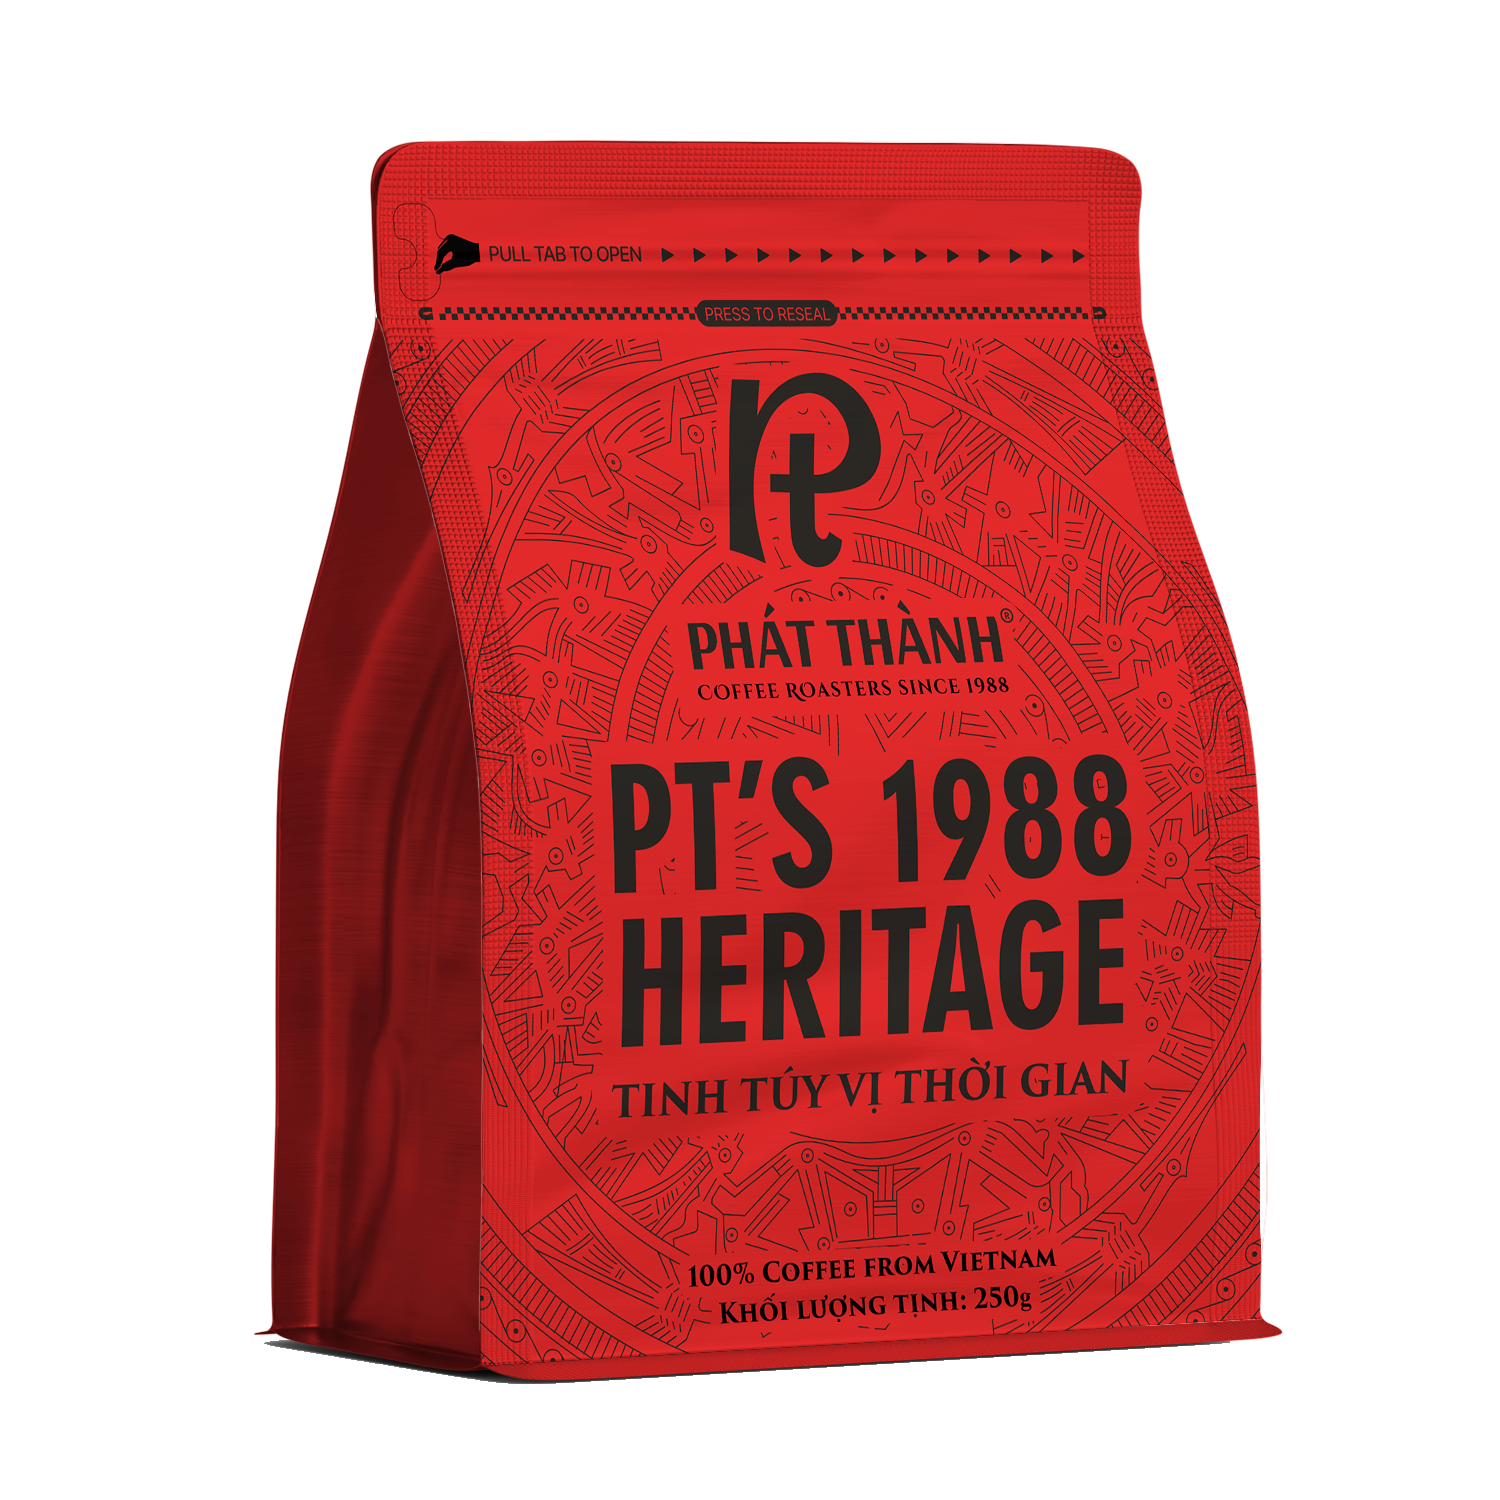 PT's 1988 Heritage PC3